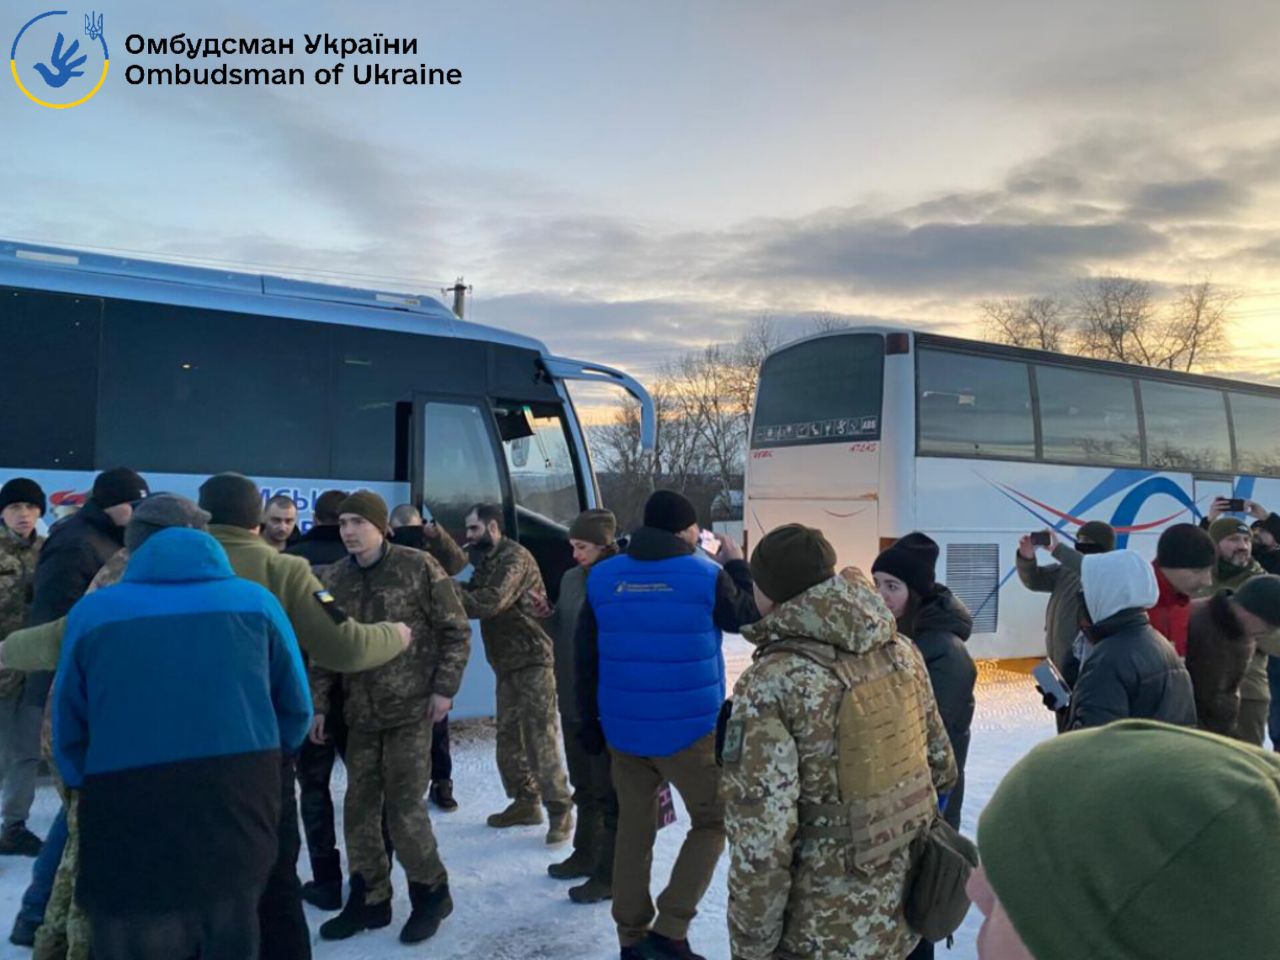 Полонені повернулися додому, 16 лютого, фото: Офіс Омбудсмана